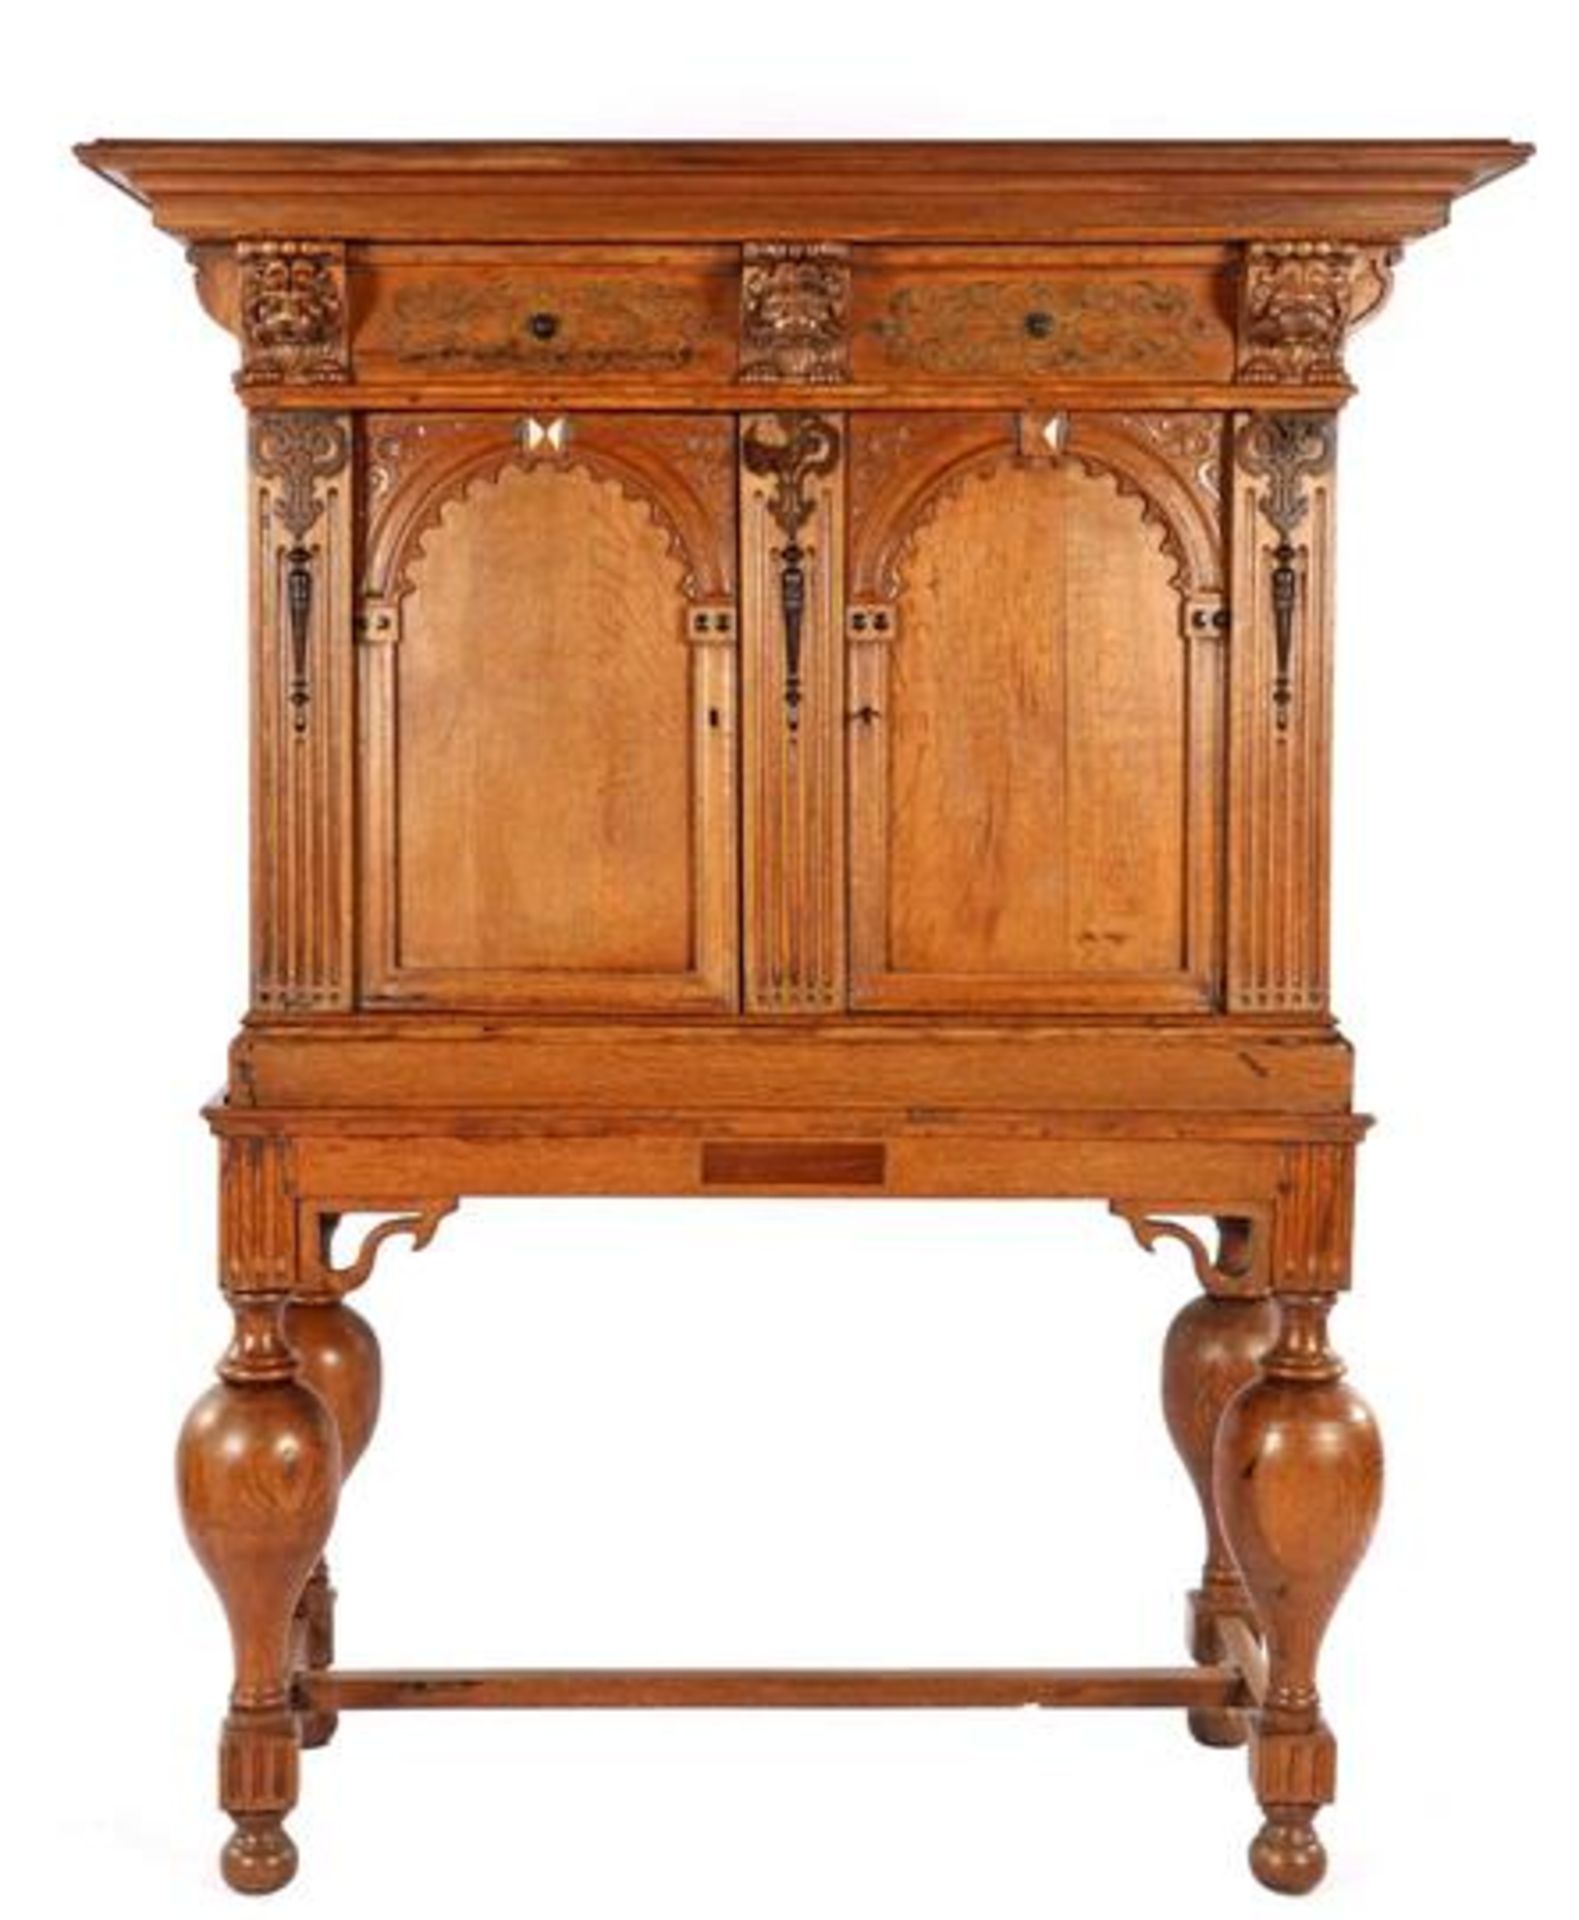 Antique oak 2-part cross-legged cabinet, Renaissance with carved frieze, lion masks and porch doors,